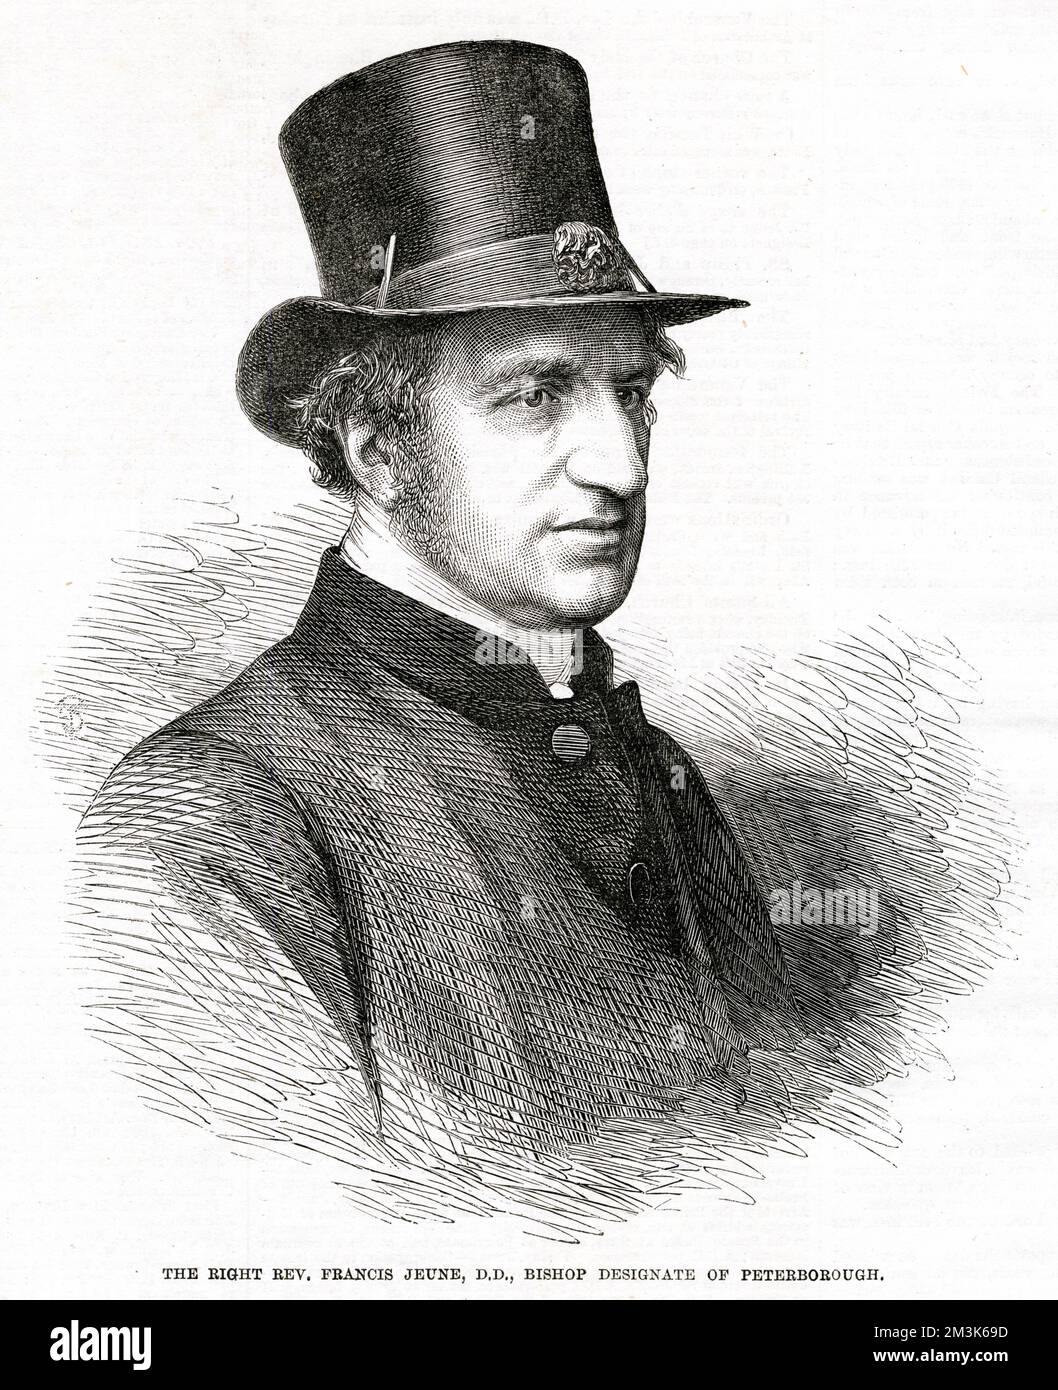 Francis Jeune, D.D. (1806 - 1868), Obispo designado de Peterborough. Fecha: 1864 Foto de stock